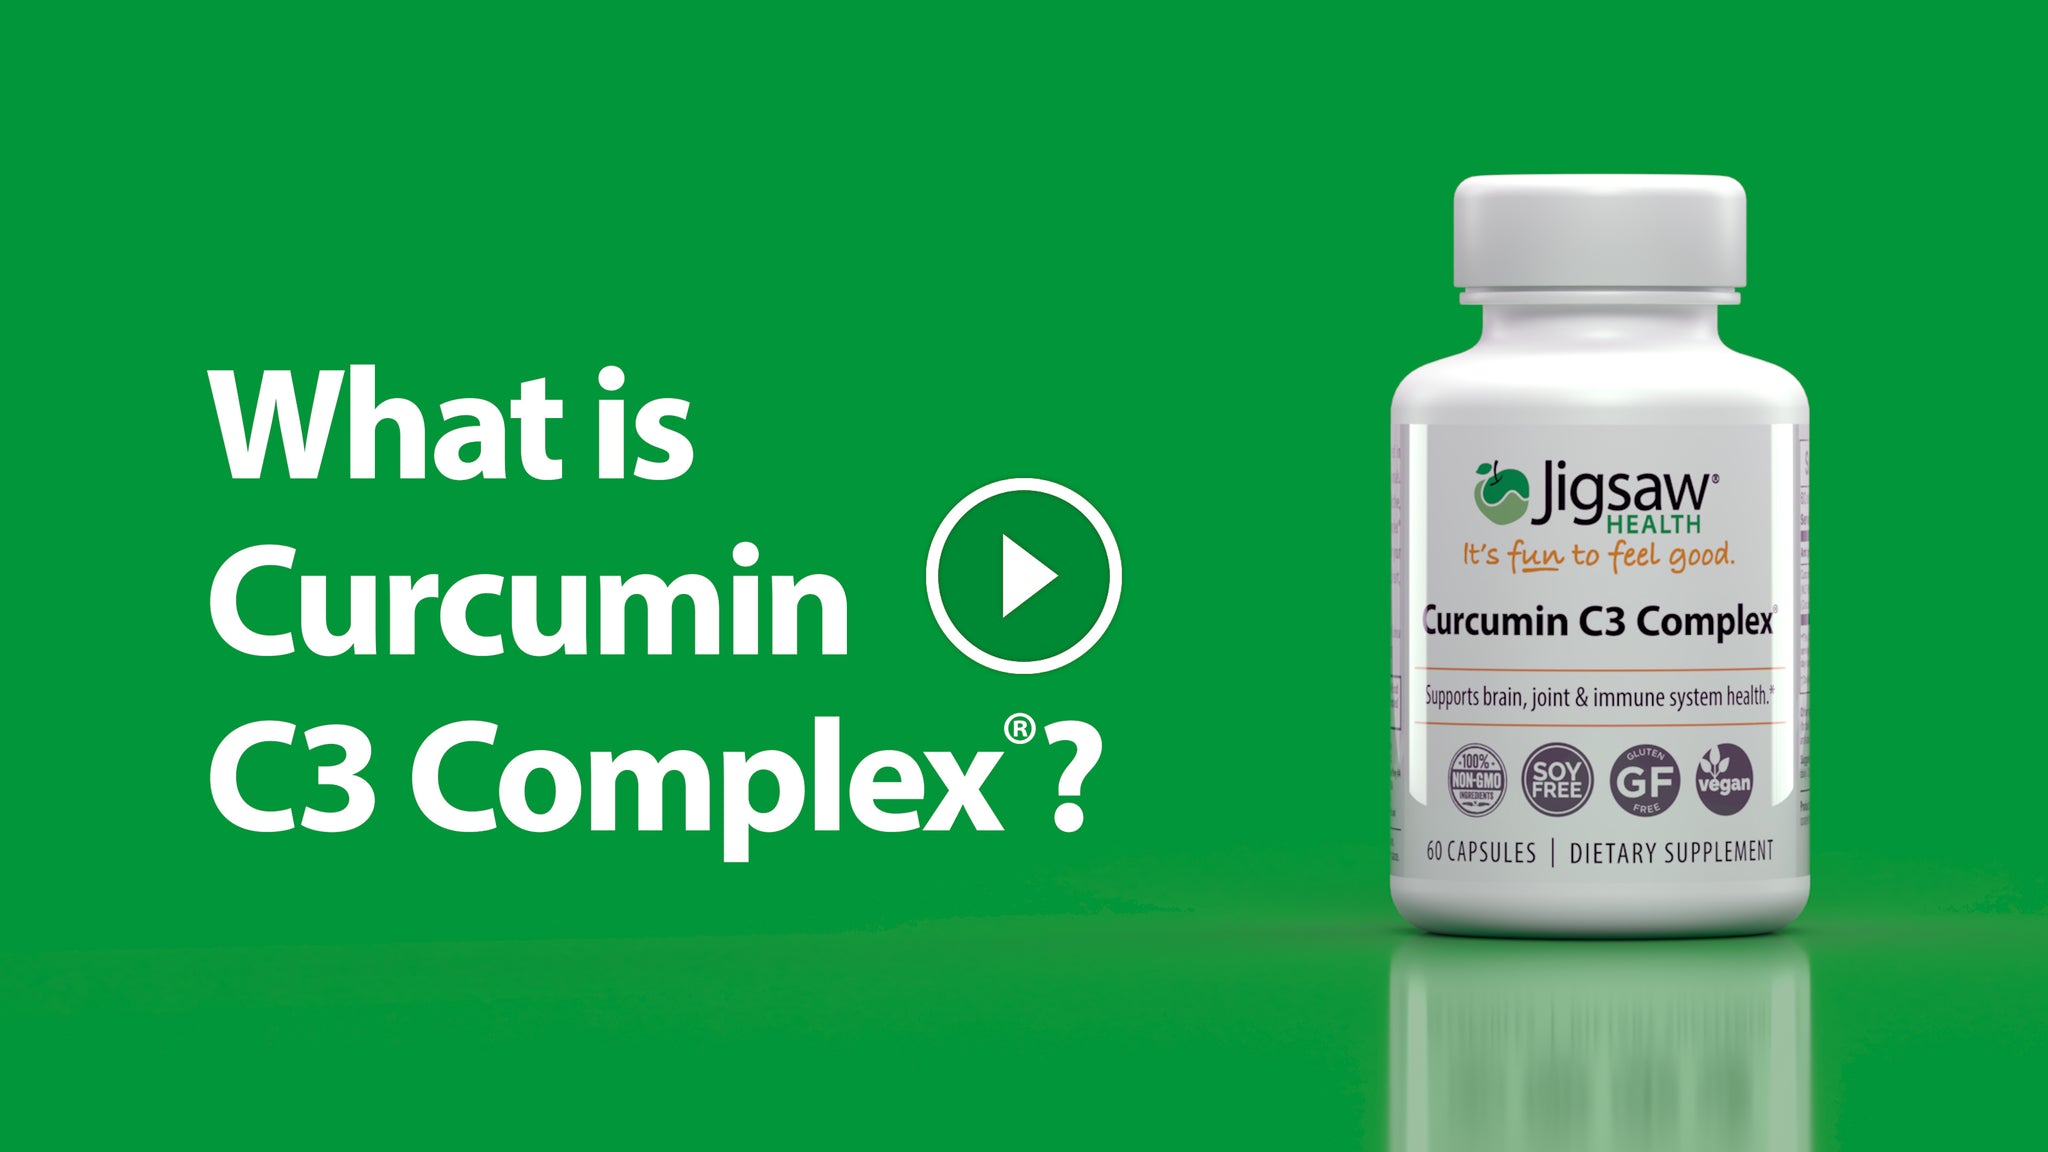 What is Curcumin C3 Complex?